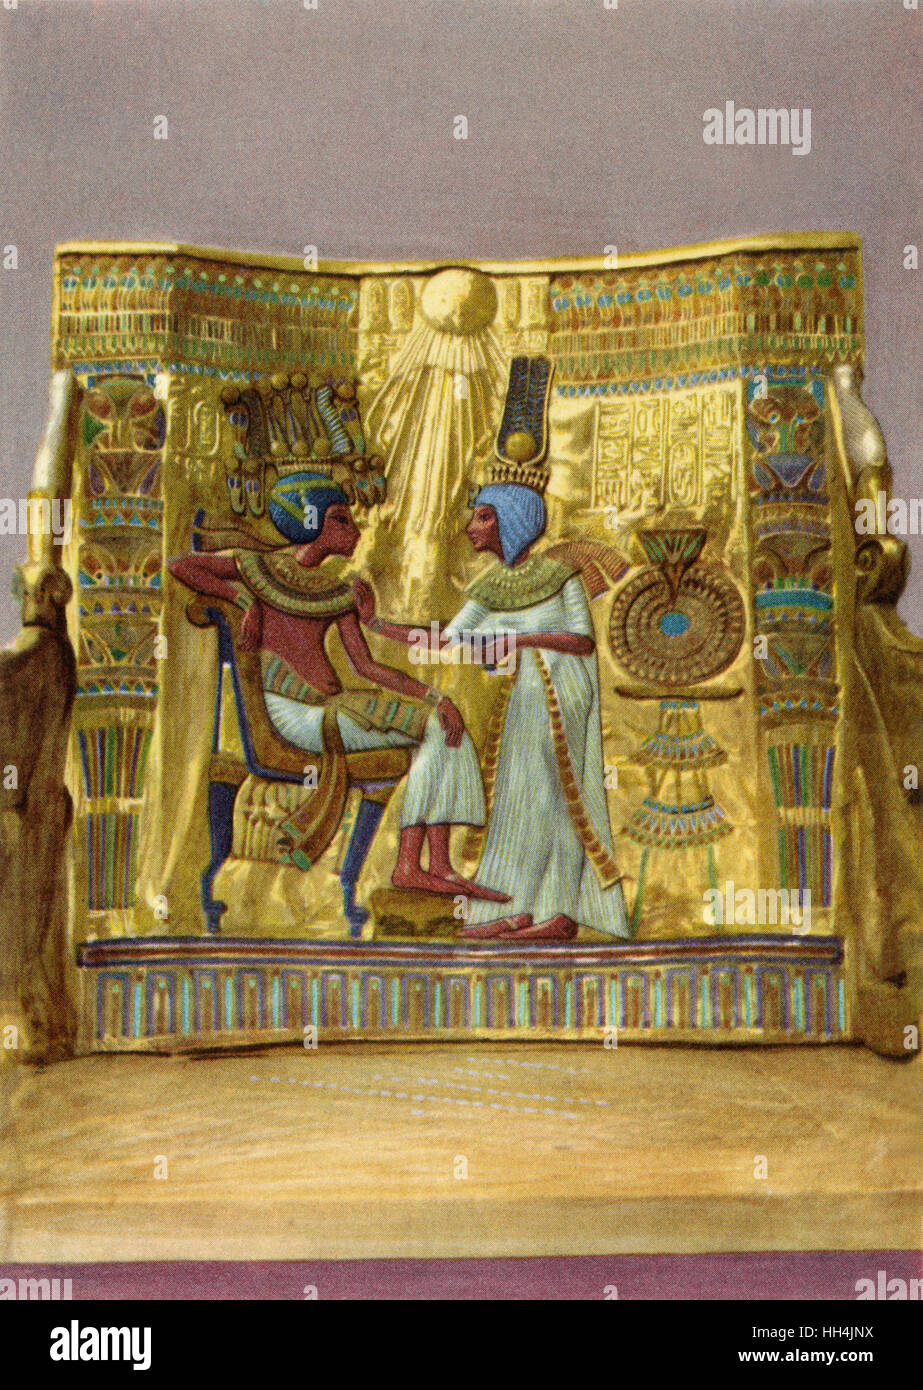 Panel auf der Rückseite des goldenen Throns des Pharao Tutankhamun (1332 – 1323 v. Chr. regierte), wie unter anderem im Jahr 1922 von Howard Carter entdeckt im Tal der Könige, gehört zu den bekanntesten Schätze des alten Ägypten. Das angezeigte Bild zeigt Stockfoto